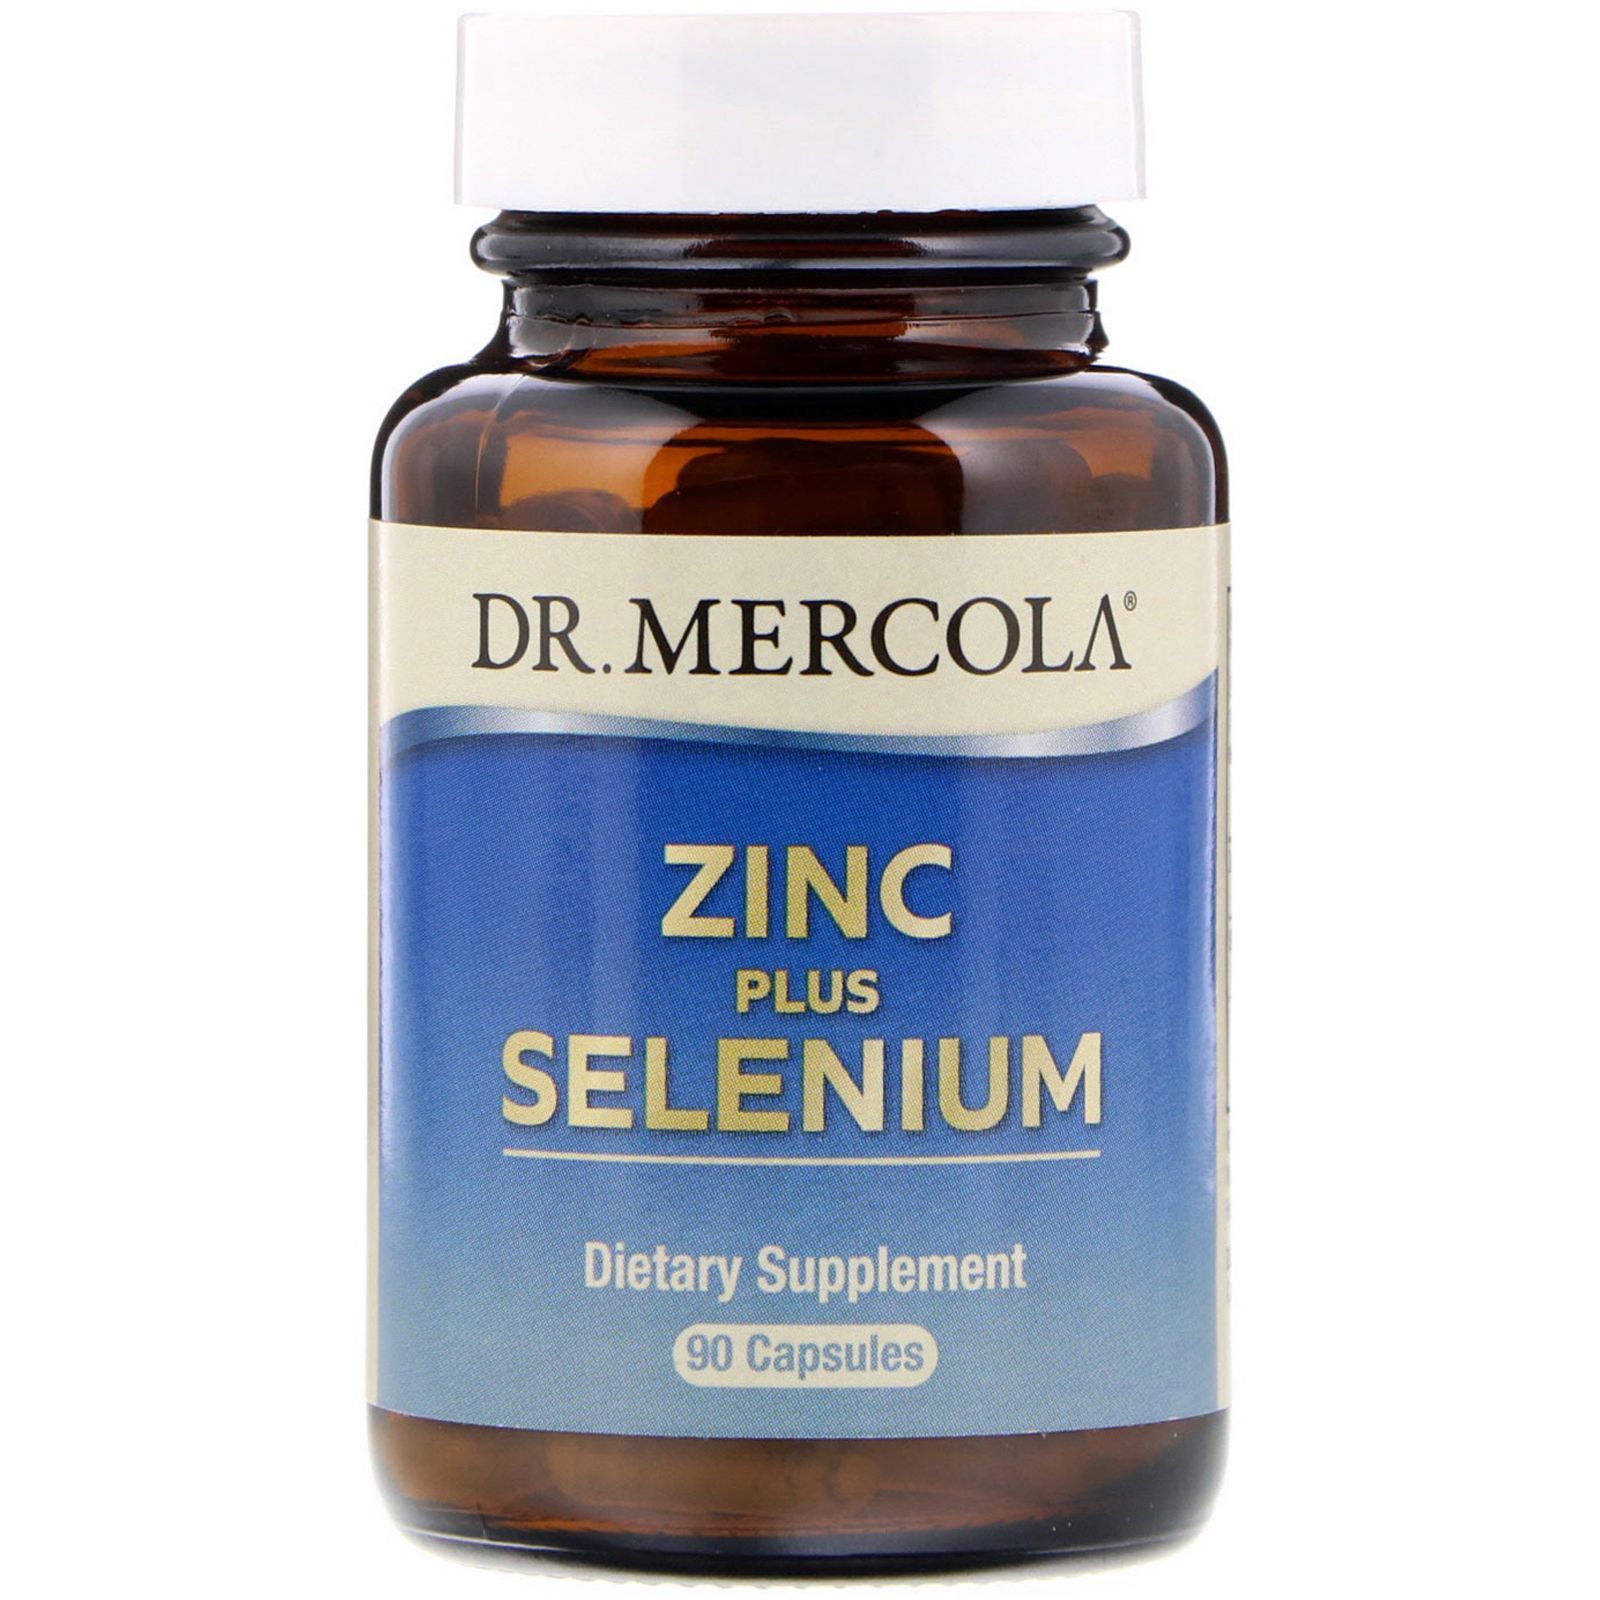 Как пить цинк и селен. Zinc селениум витамины. Цинк Dr Mercola. Капсулы селениум плюс цинк. Цинк и селен от доктора Меркола.